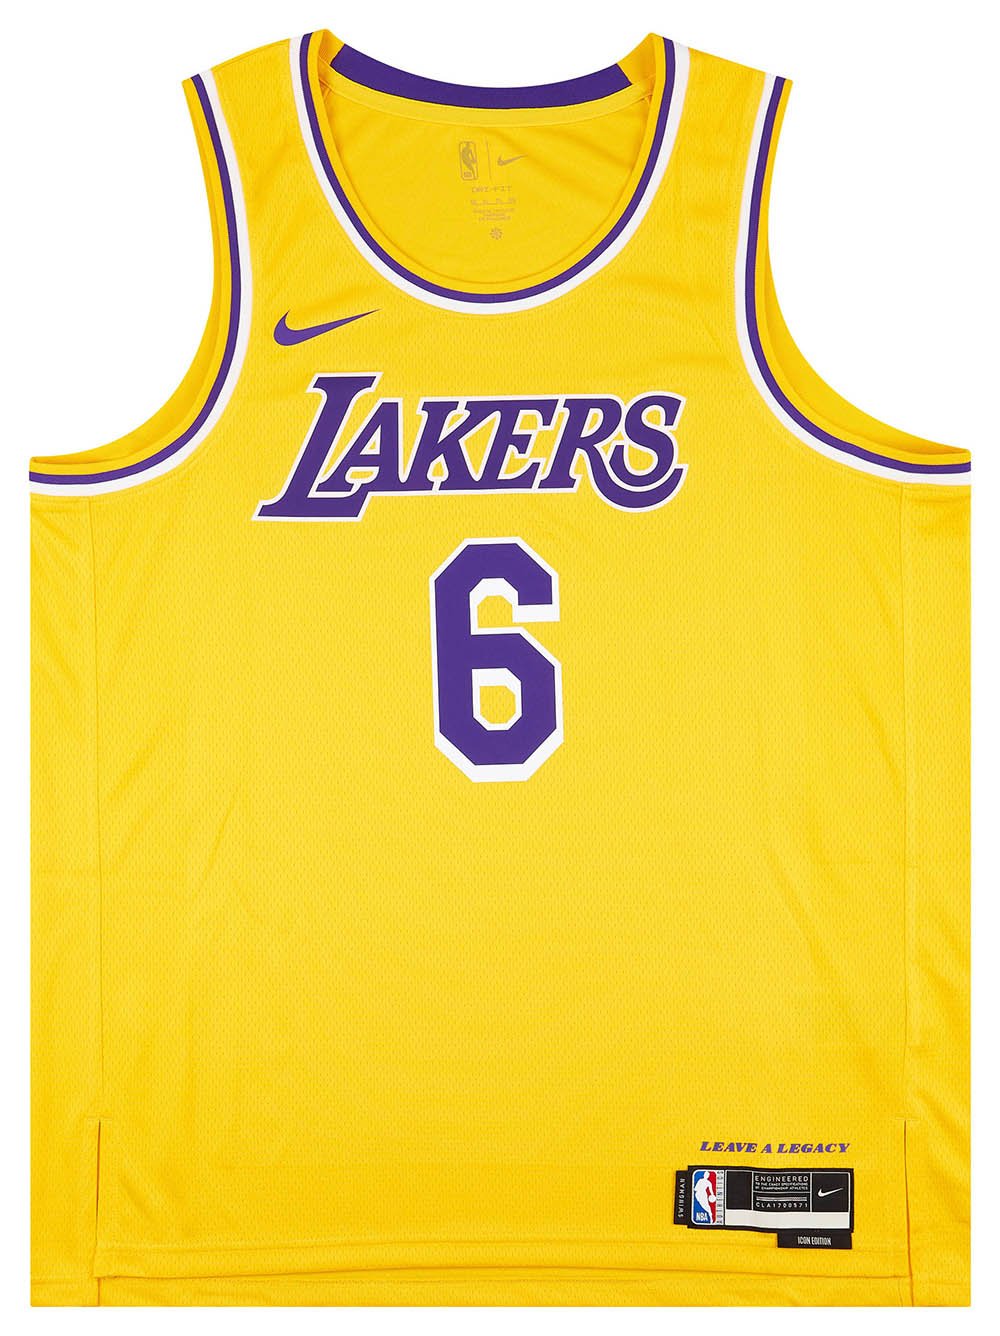 White Nike NBA LA Lakers Swingman James #6 Jersey